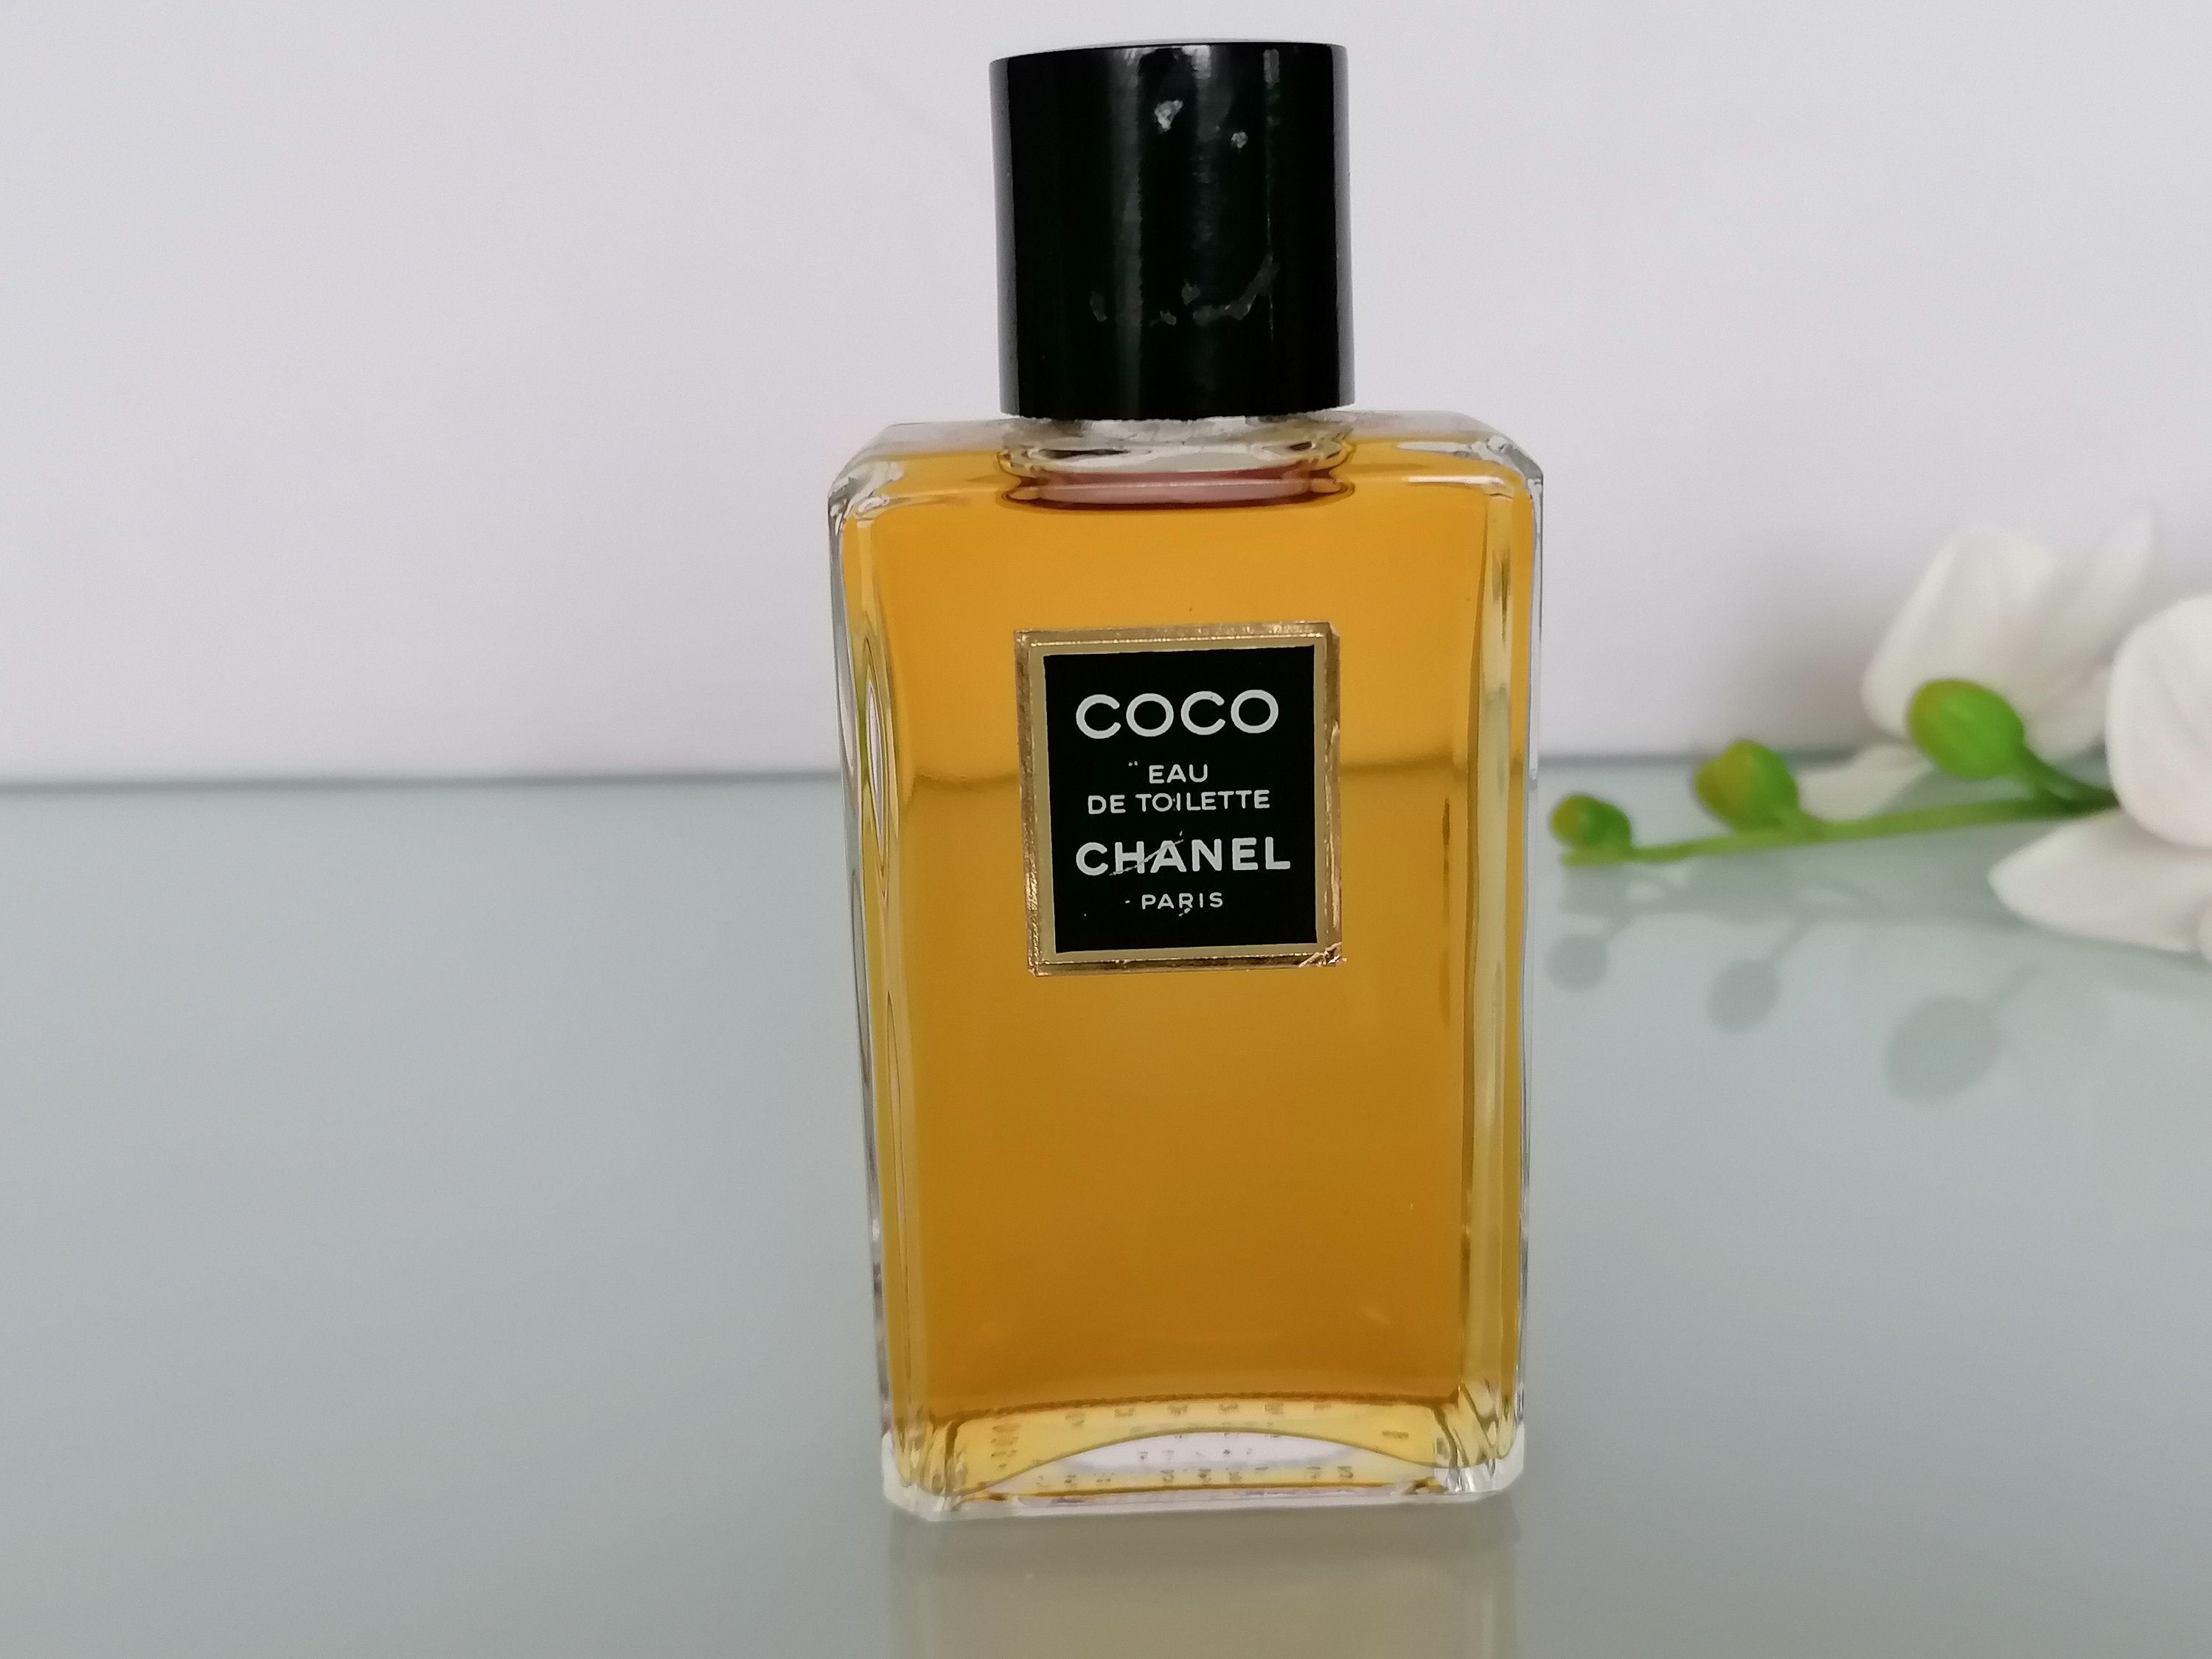 Chanel Coco Eau De Parfum Fragrance Review (1984) 